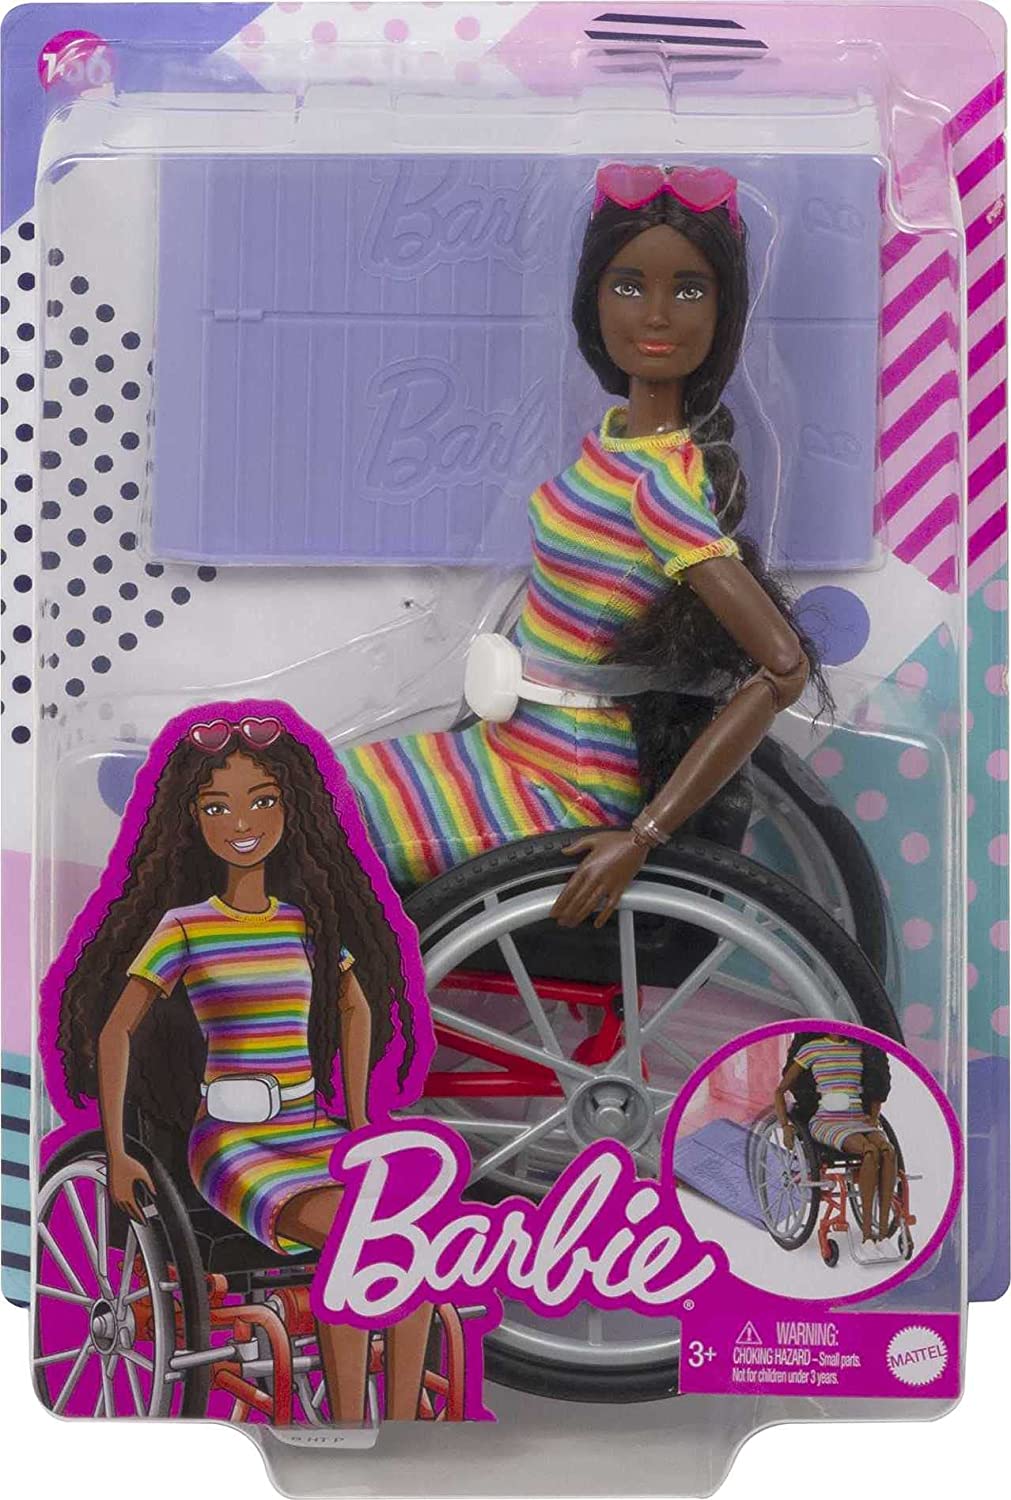 Barbie Fashionistas Doll #166 con sedia a rotelle e capelli castani arricciati